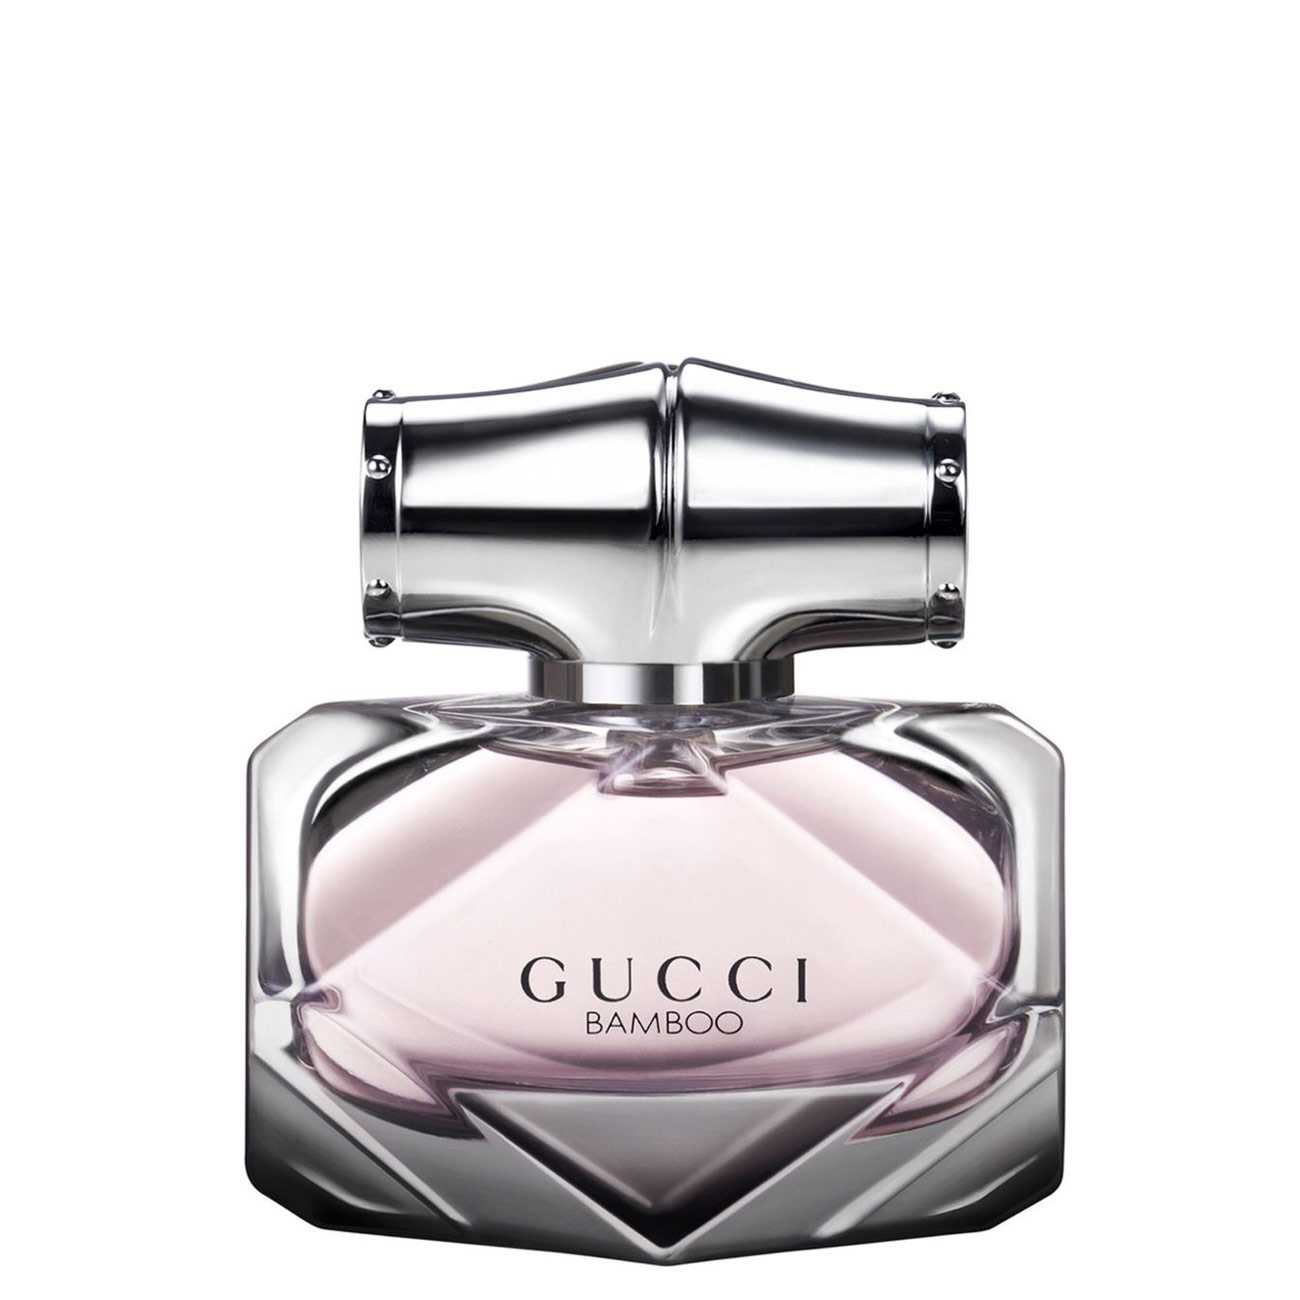 Apa de Parfum Gucci BAMBOO 50ml cu comanda online